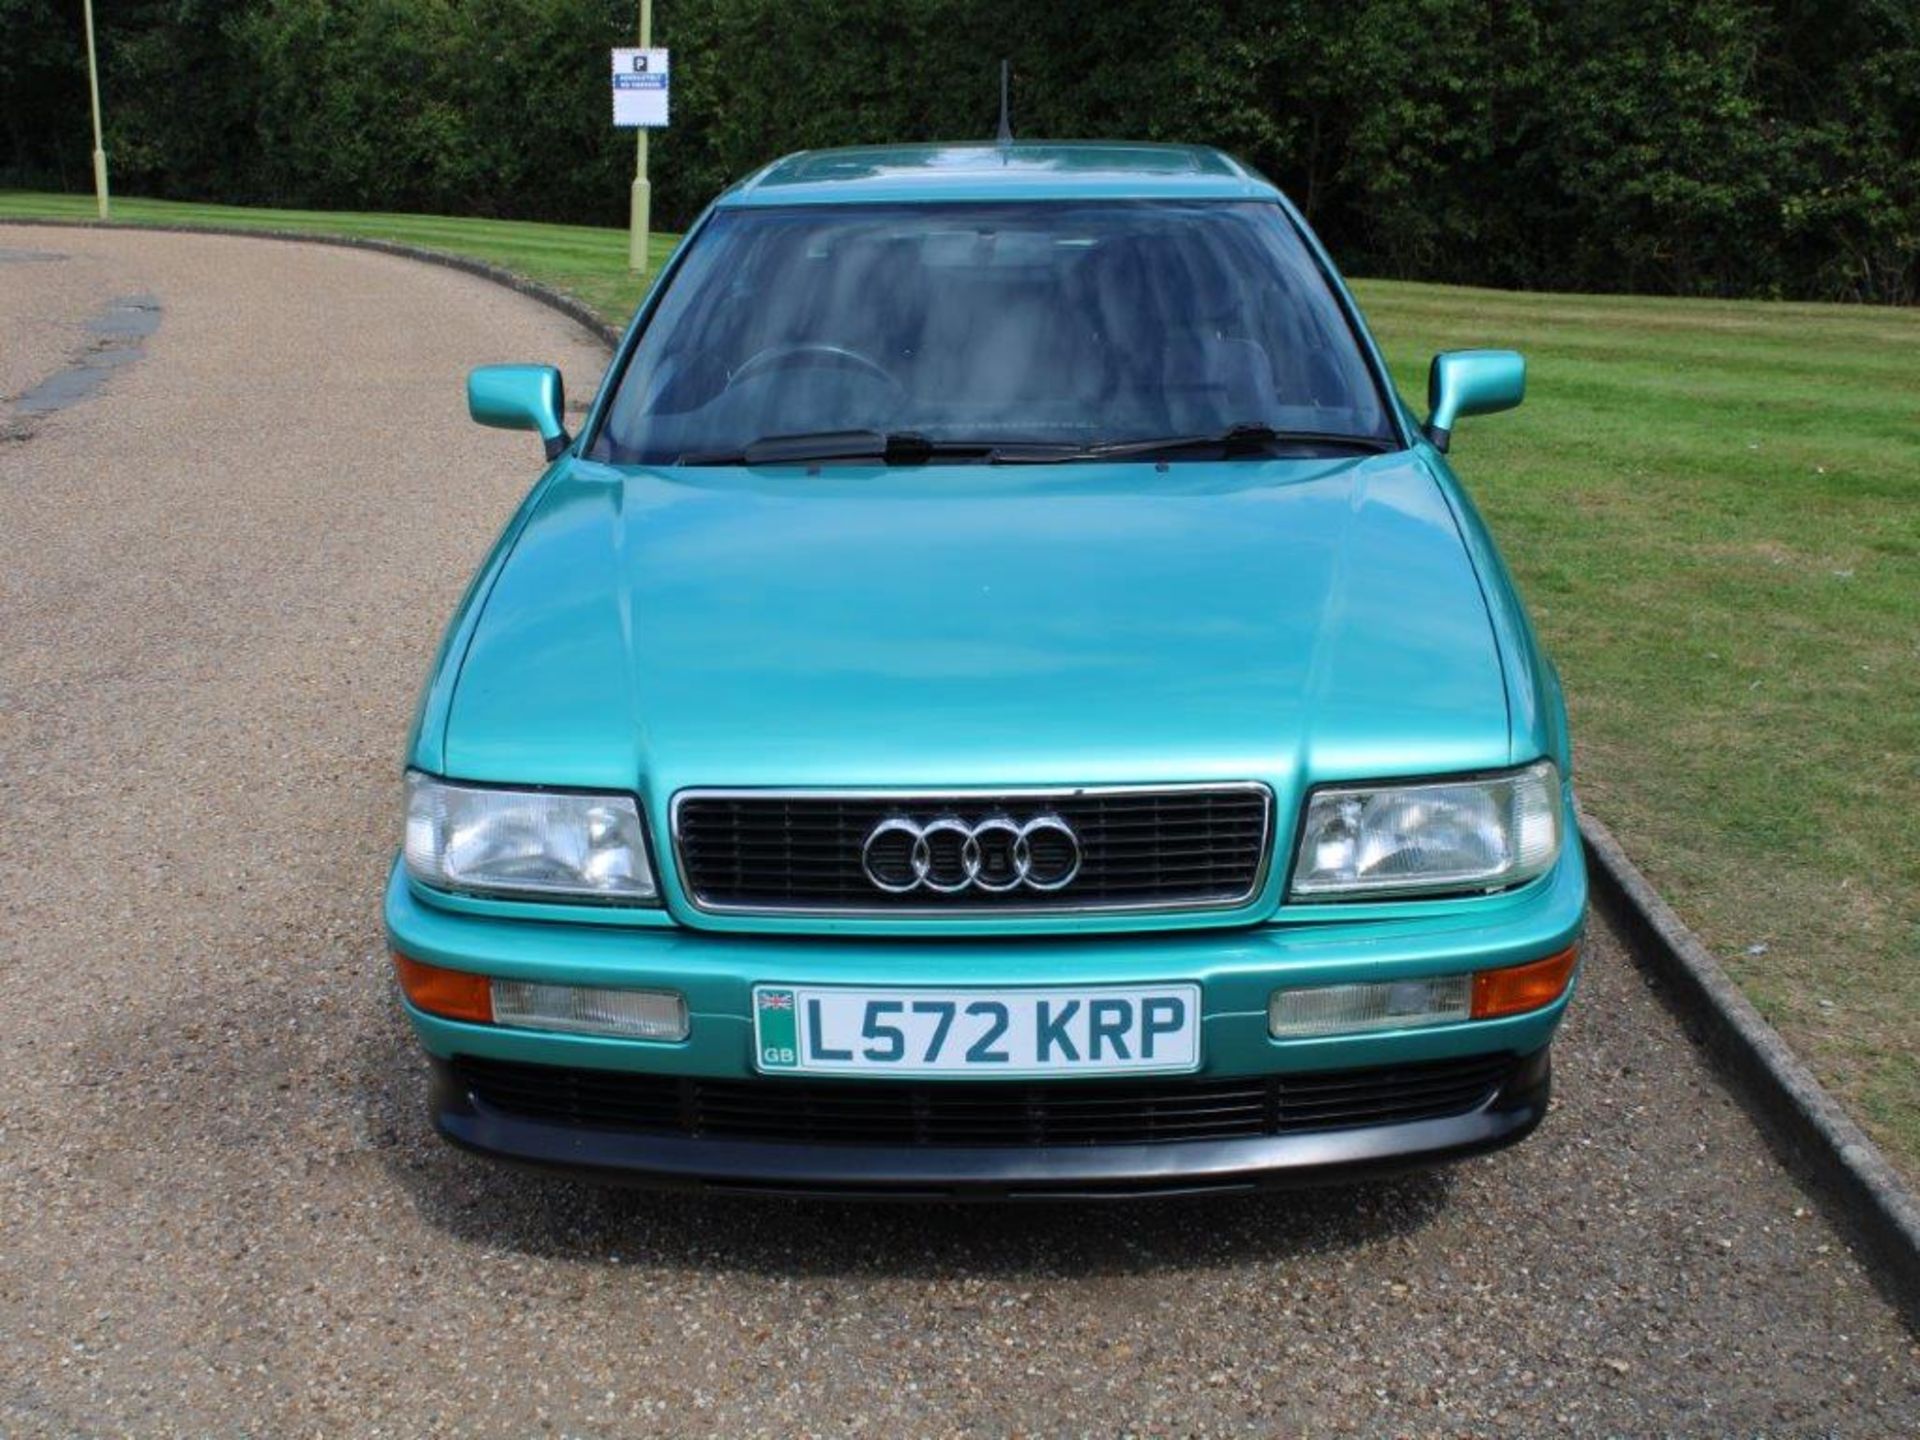 1994 Audi Coupe 2.6E - Image 6 of 20